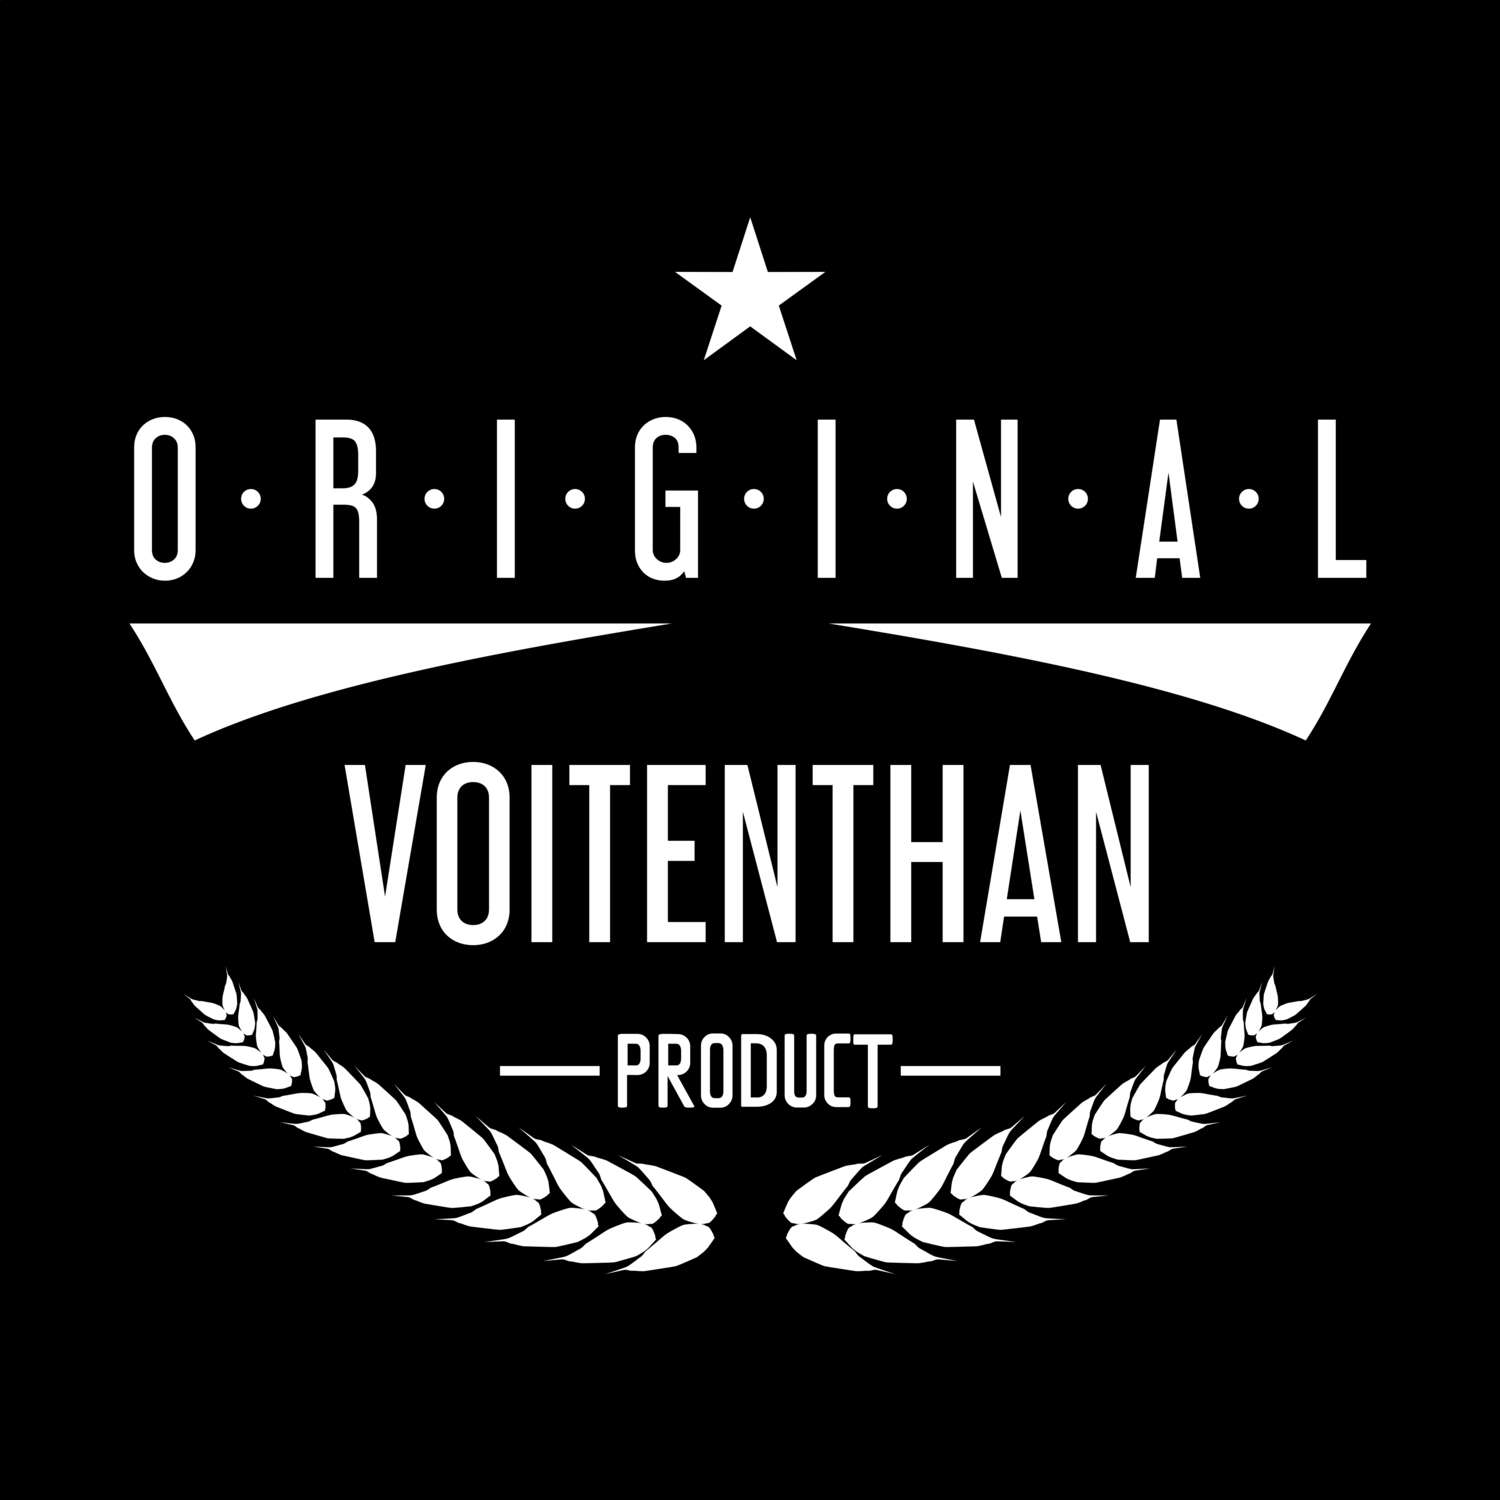 Voitenthan T-Shirt »Original Product«